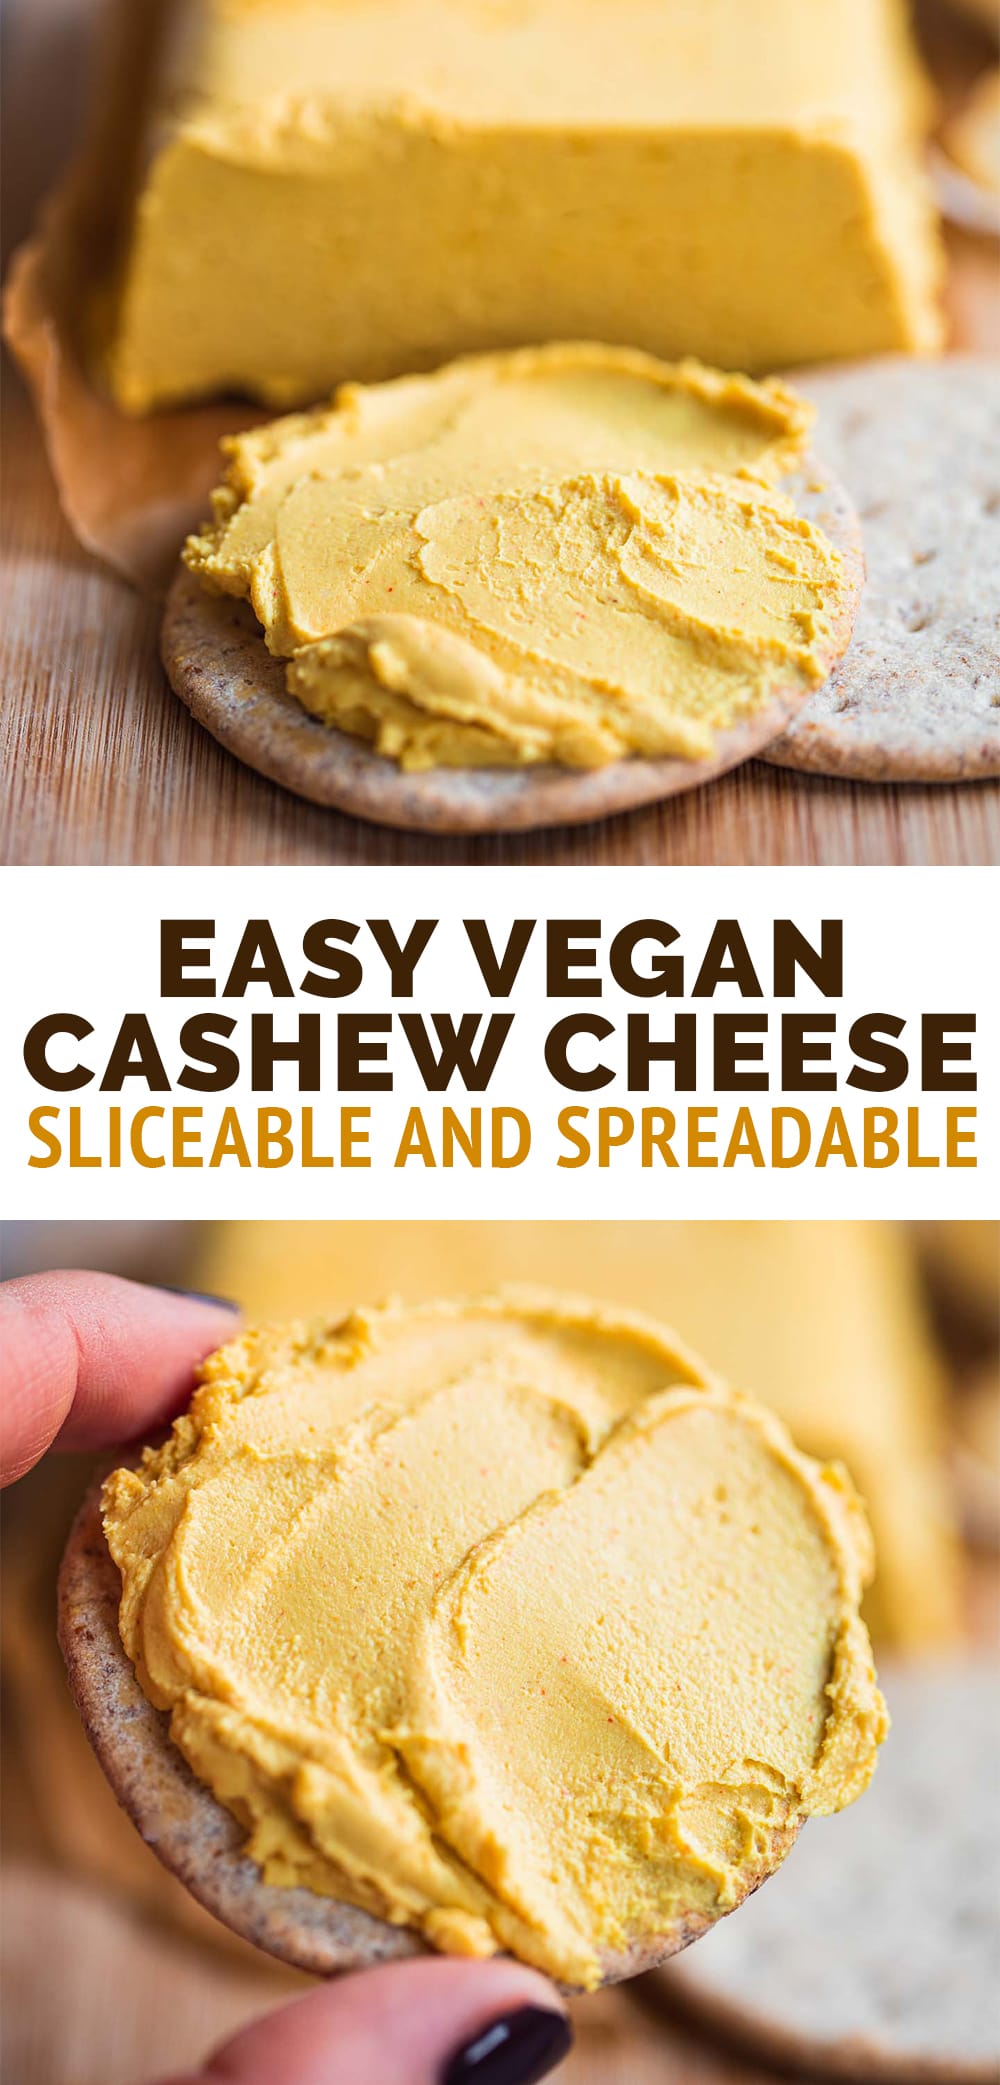 Easy vegan cashew cheese